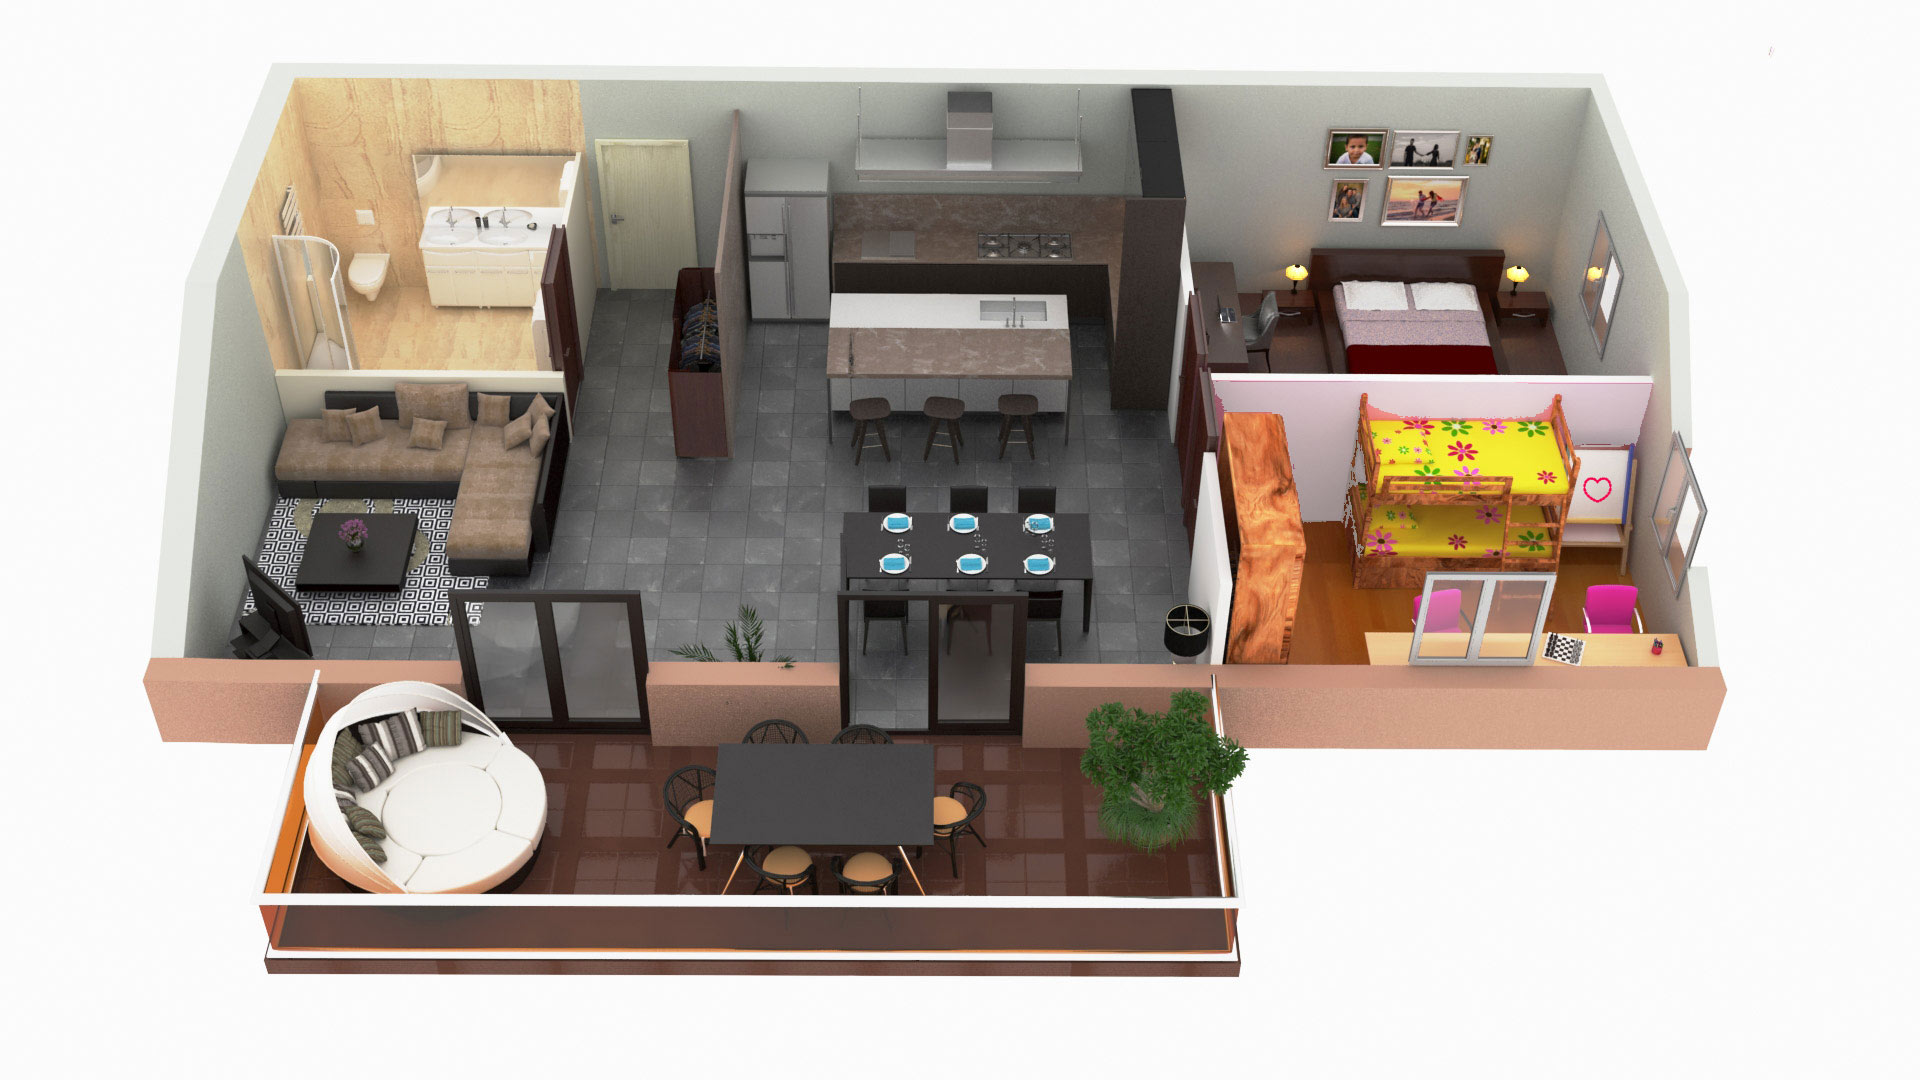 Plan de vente d'appartement 3d, réalisé par Marina Sije - Graphiste architecture freelance